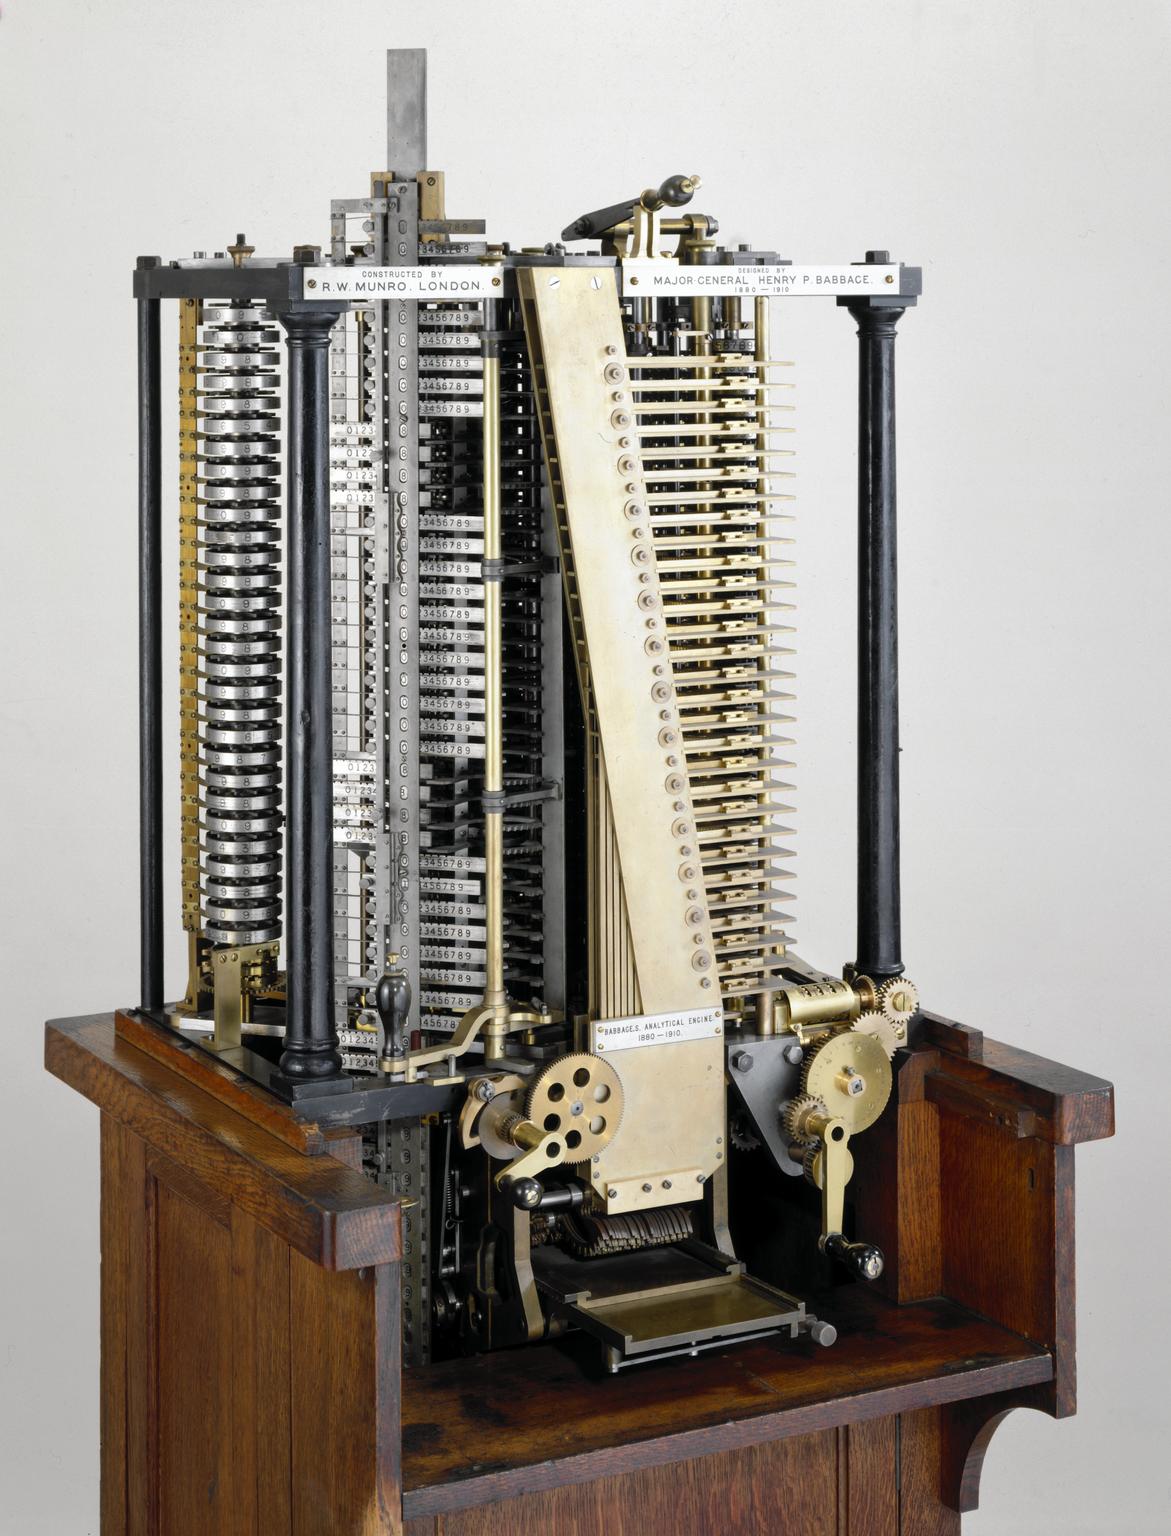 Первая машина бэббиджа. Аналитическая машина Чарльза Бэббиджа. Вычислительная машина Чарльза Бэббиджа. Анолитичная машина Чальза беббуд. Аналитическая магинабэббиджа.